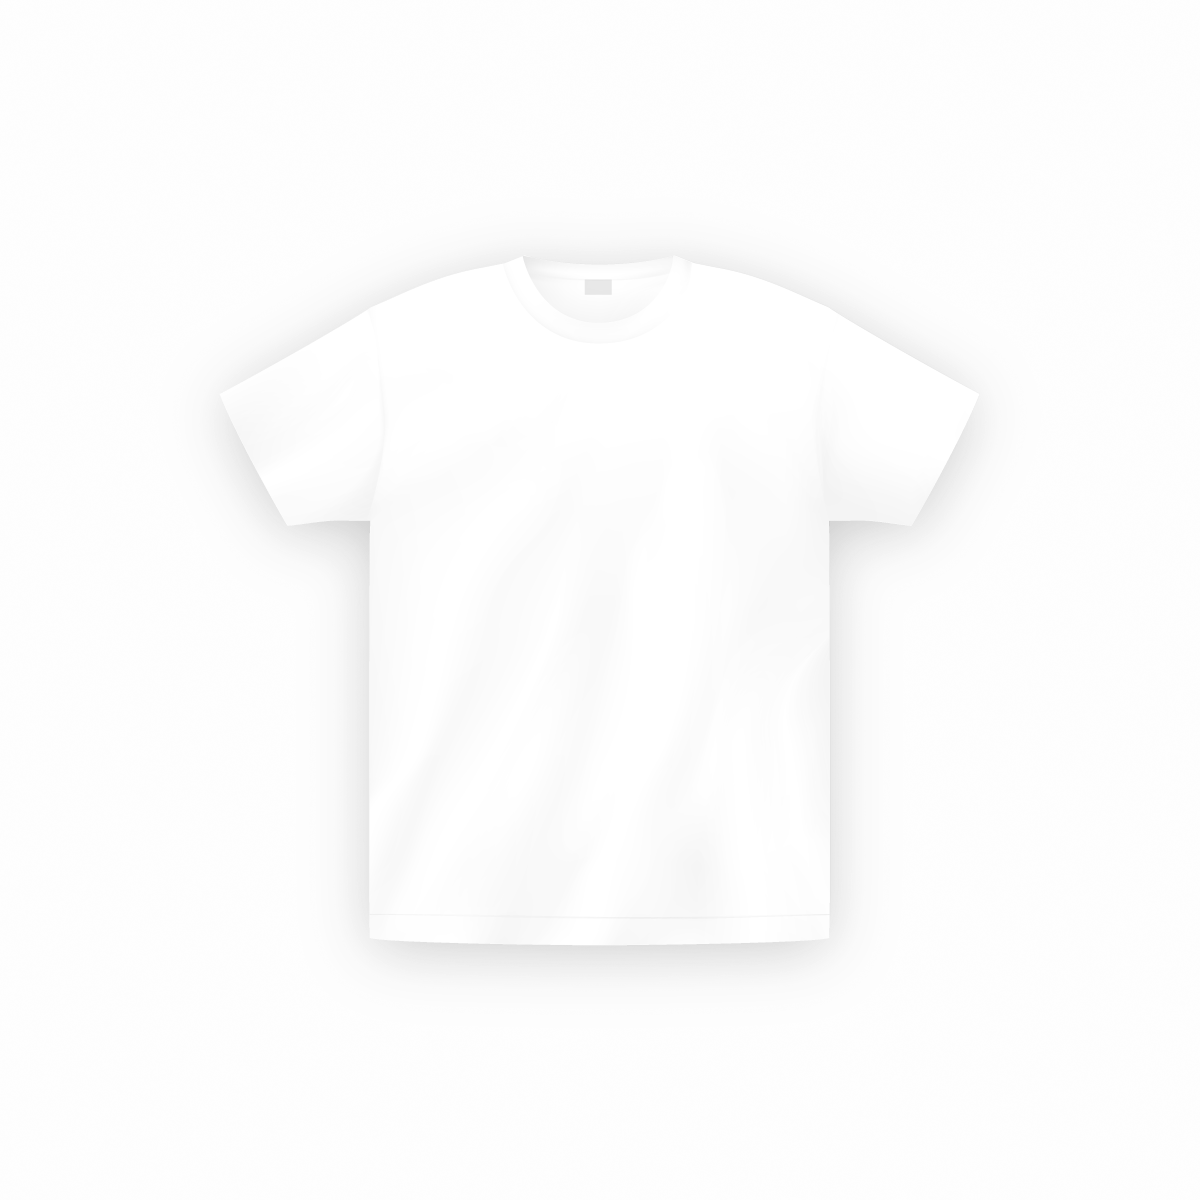 Surishi Editor 無料簡単オリジナルtシャツデザインアプリ